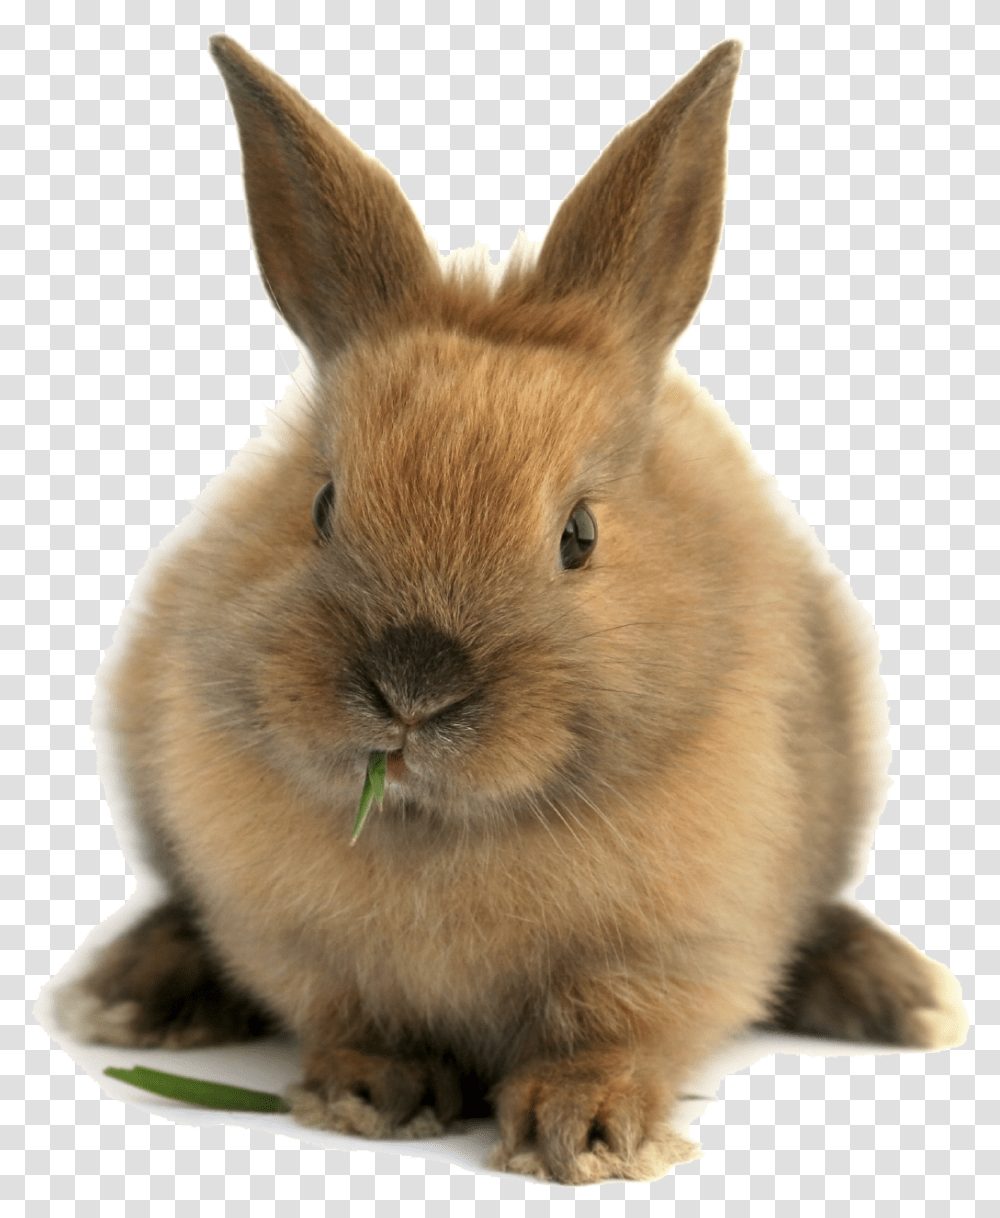 Bunnies, Rodent, Mammal, Animal, Rabbit Transparent Png